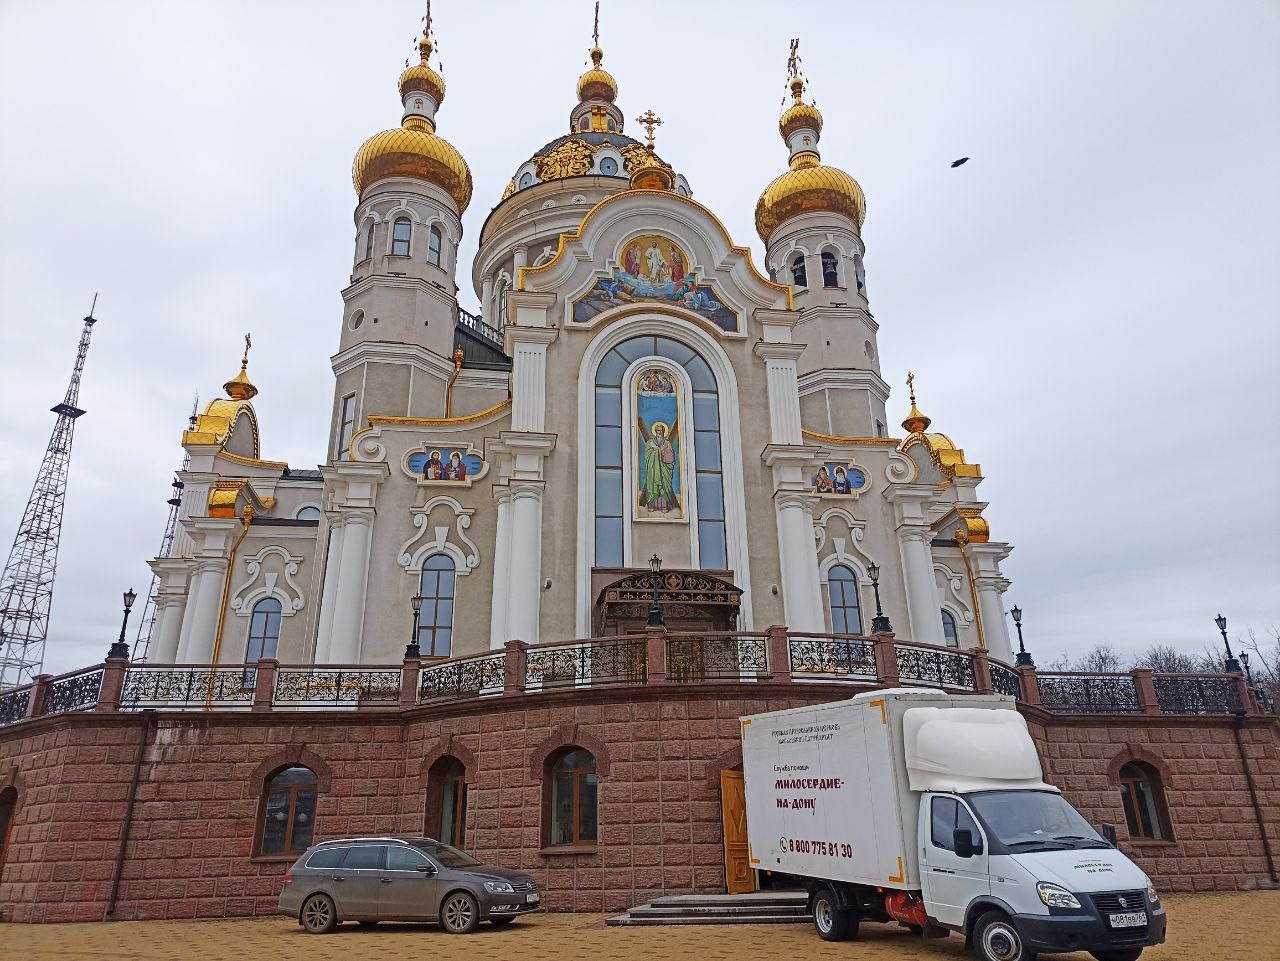 Православная служба «Милосердие-на-Дону» доставила помощь для пострадавших мирных жителей